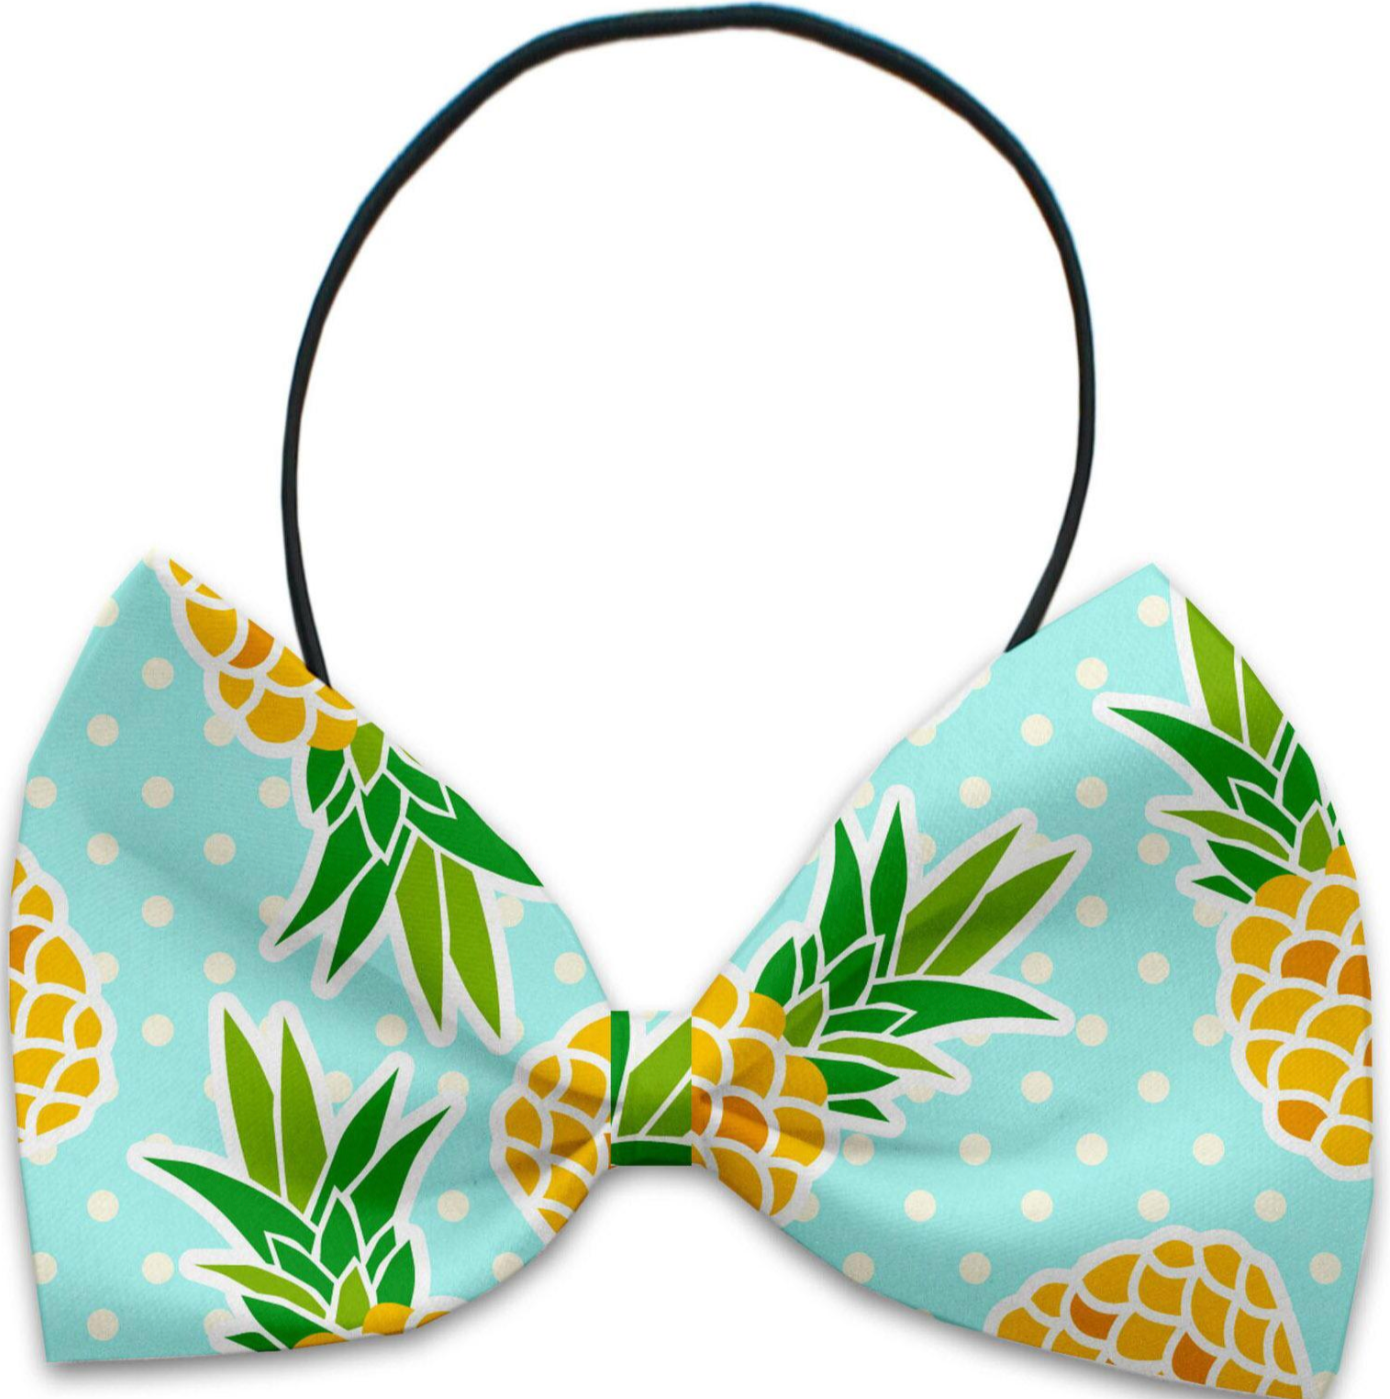 Pineapple Bow Tie